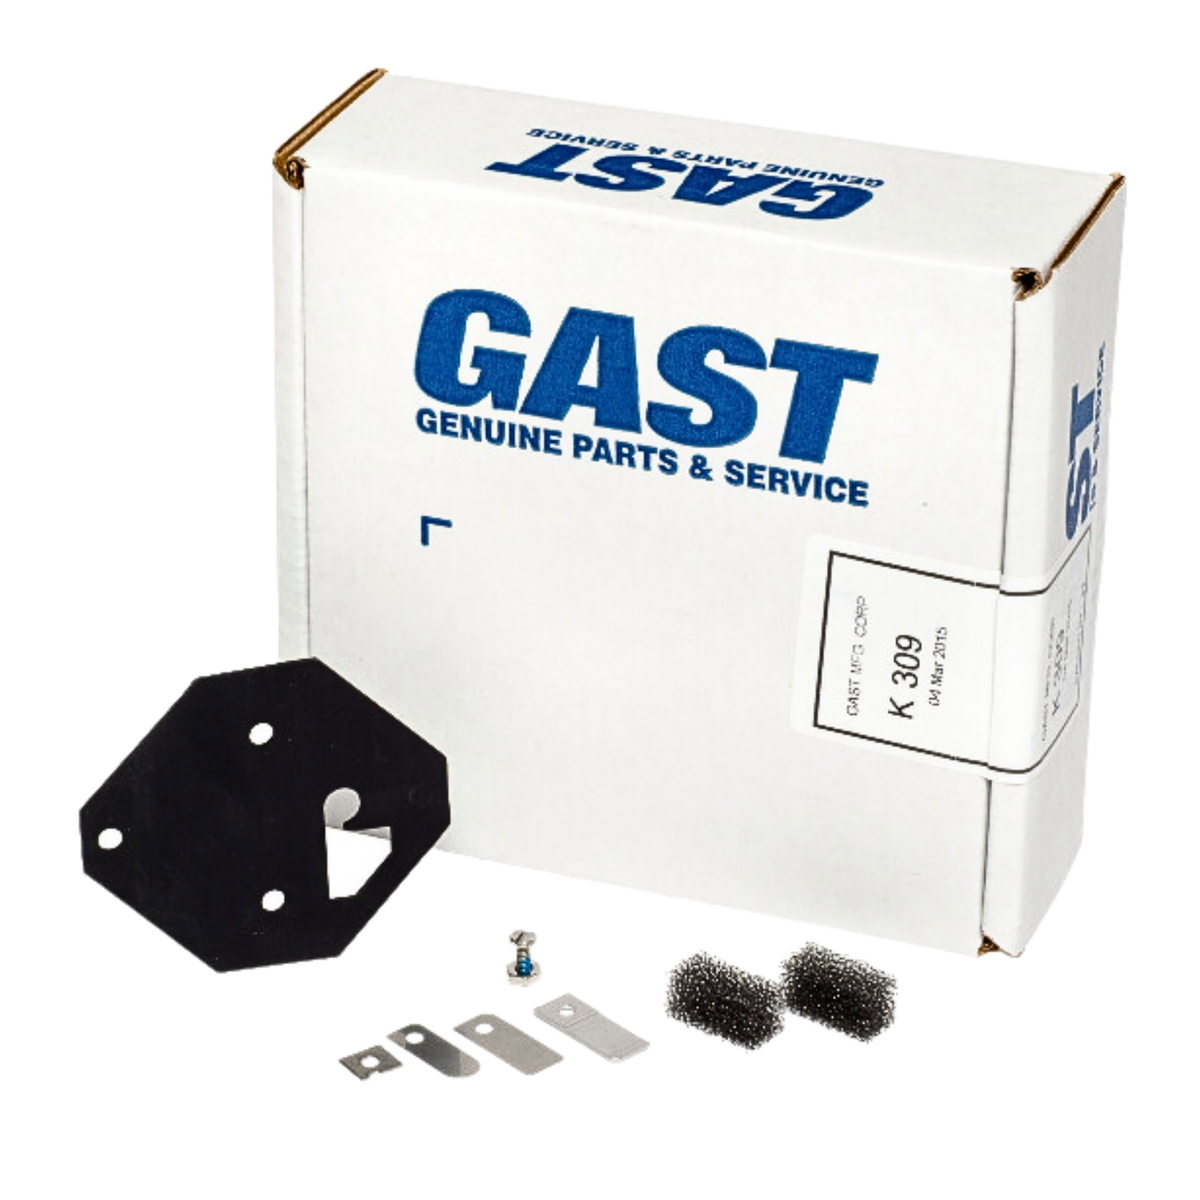 Gast | MOA/MAA Service Kit | K309 used on gast product line